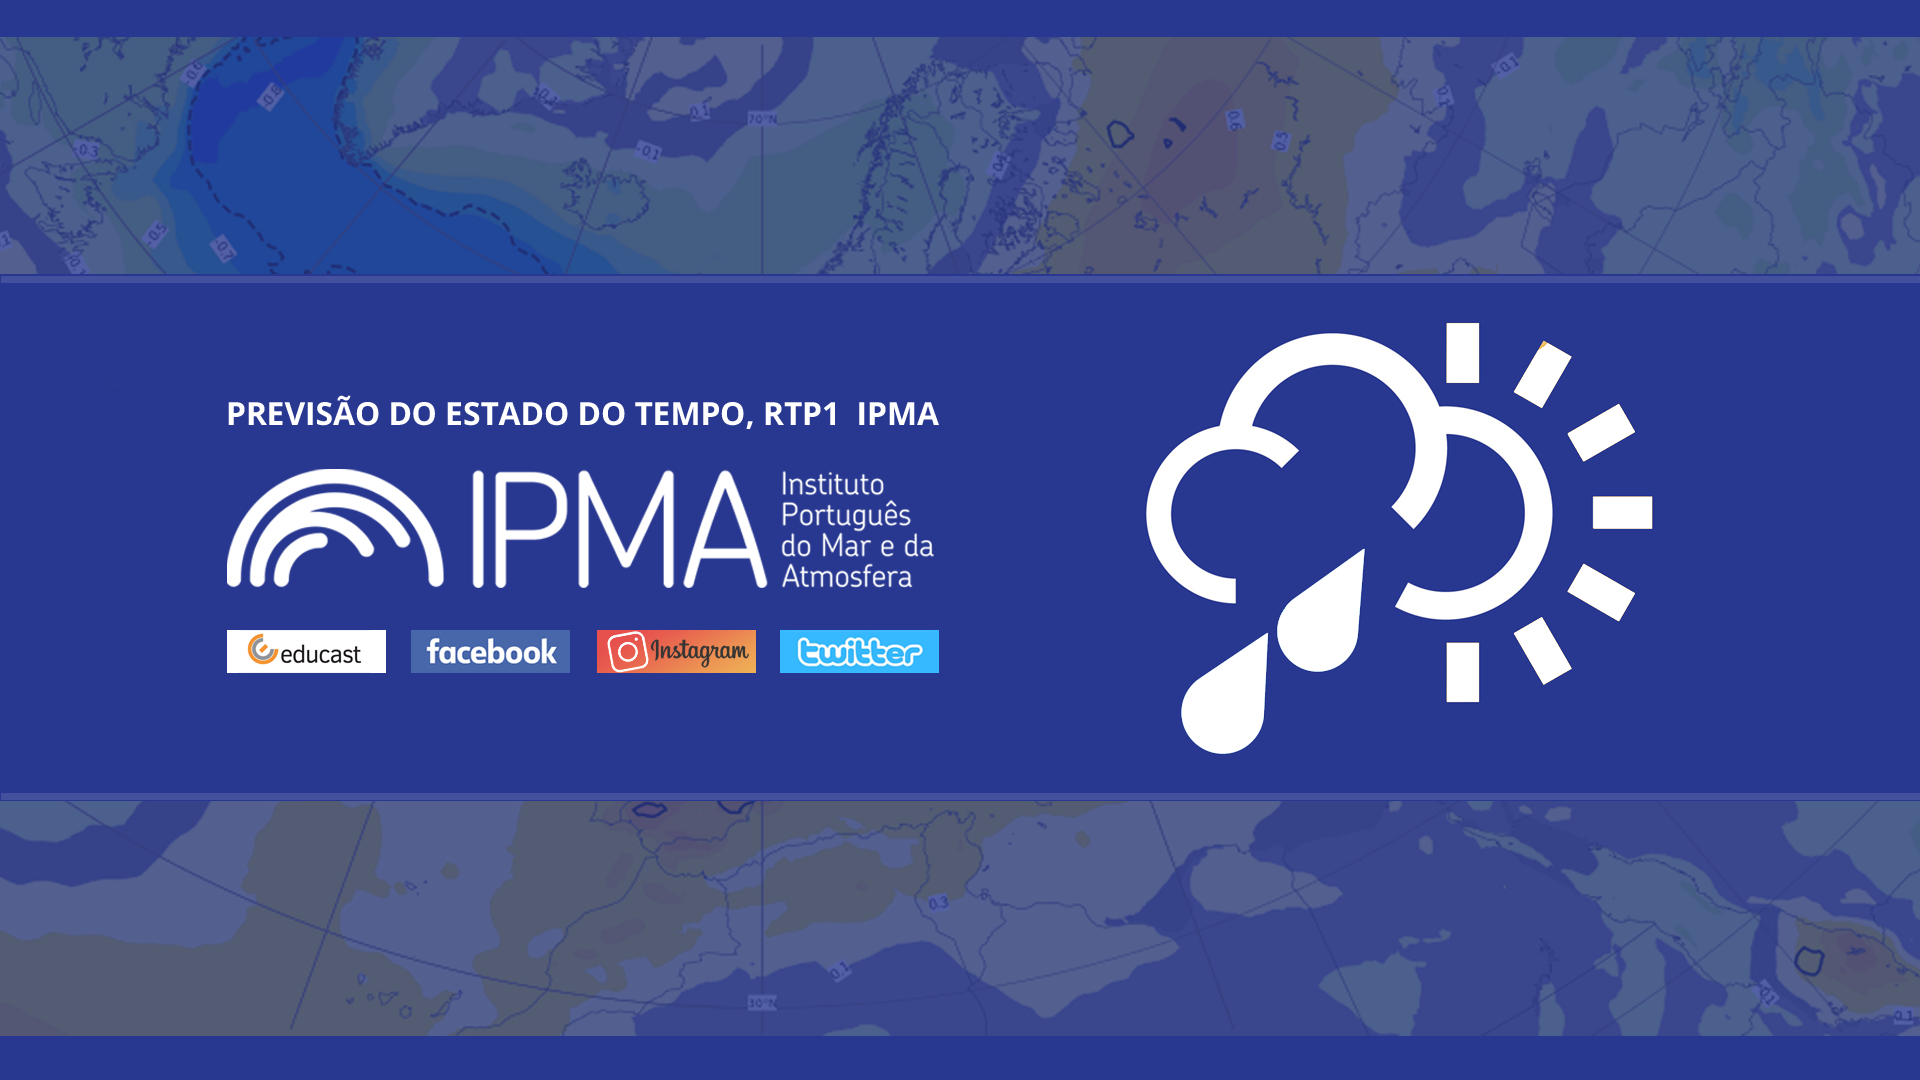  Previsão do estado do tempo, RTP1, 18-02-2022, IPMA.